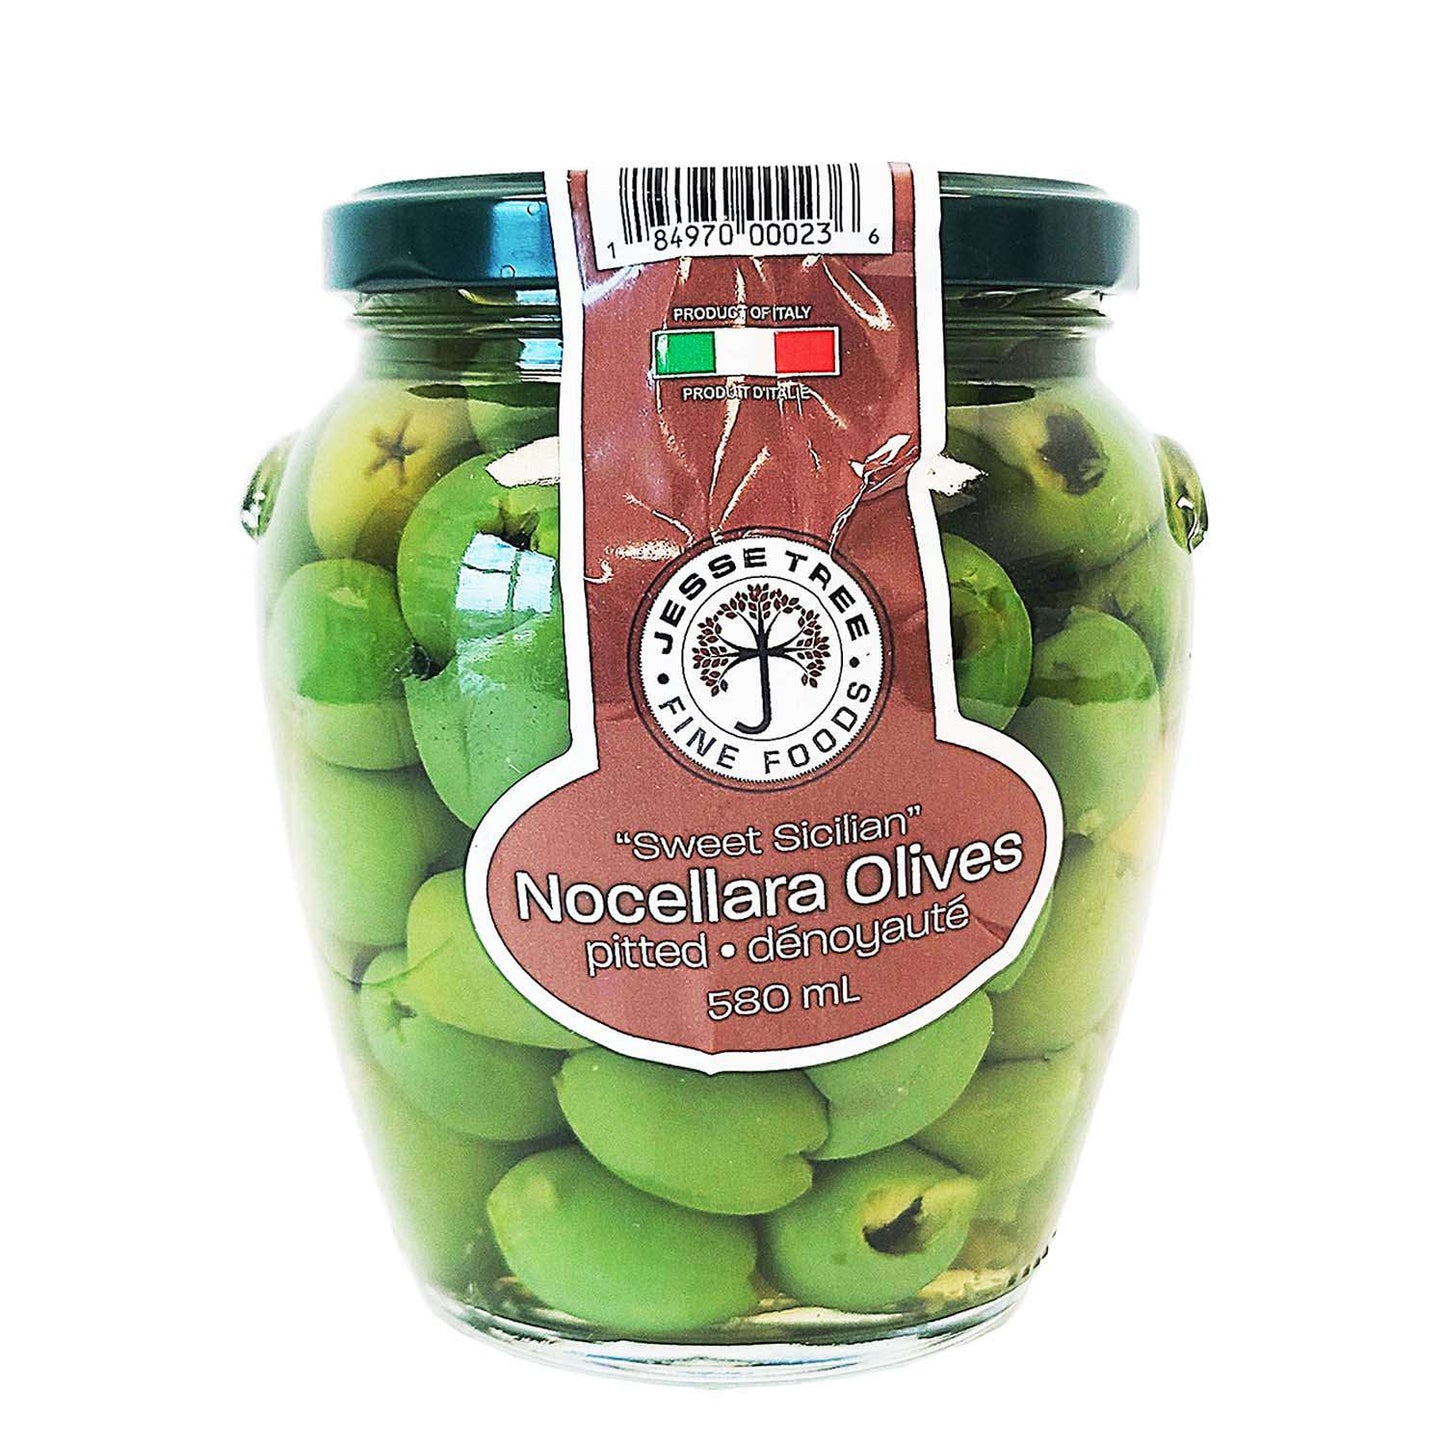 Whole Olives